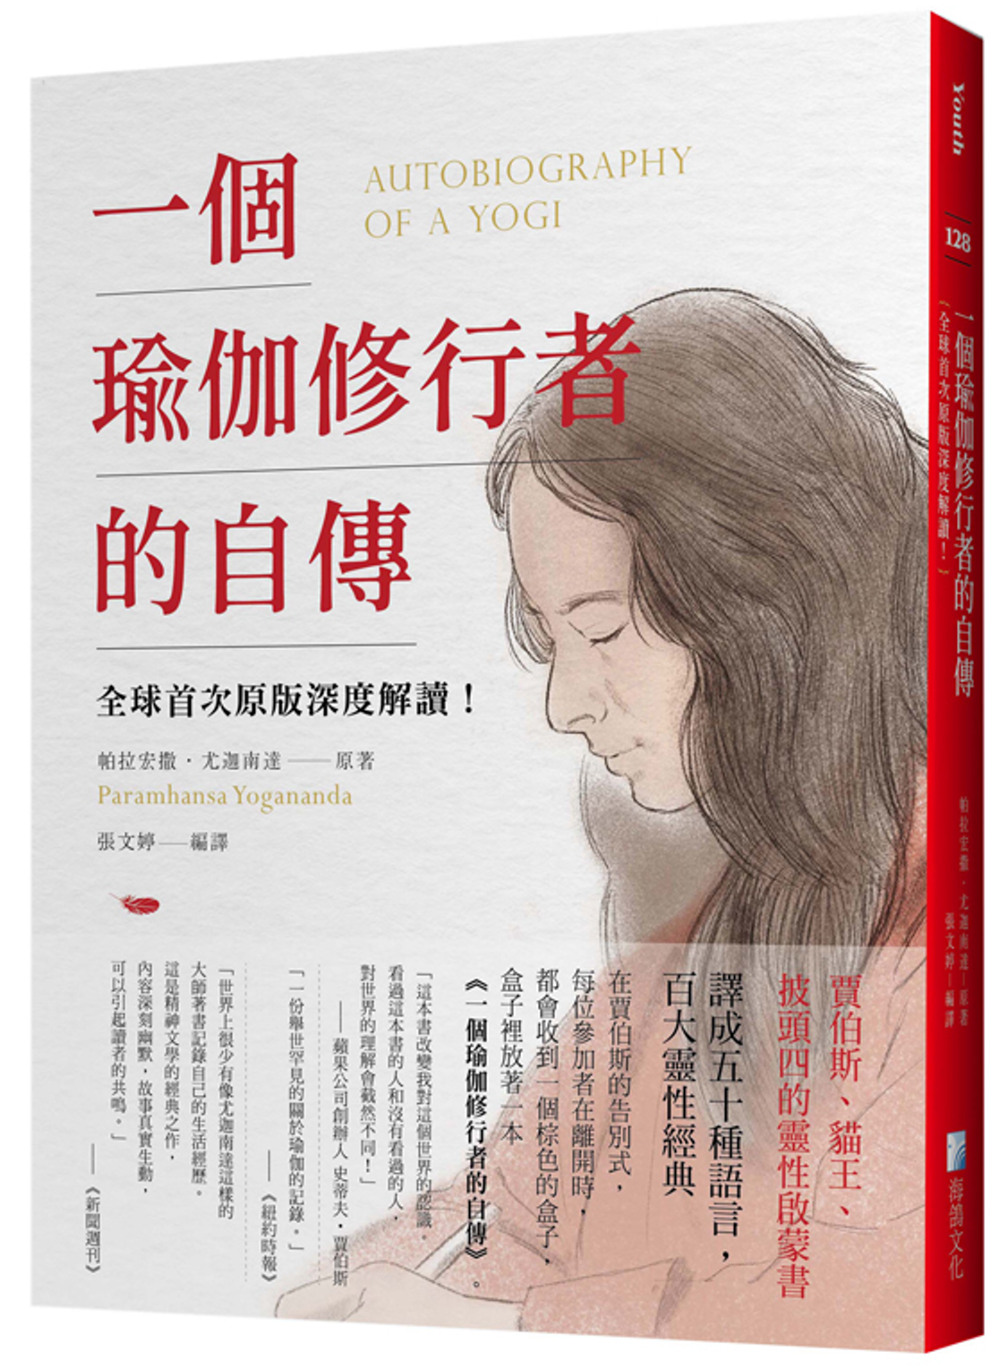 一個瑜伽修行者的自傳：全球首次原版深度解讀！